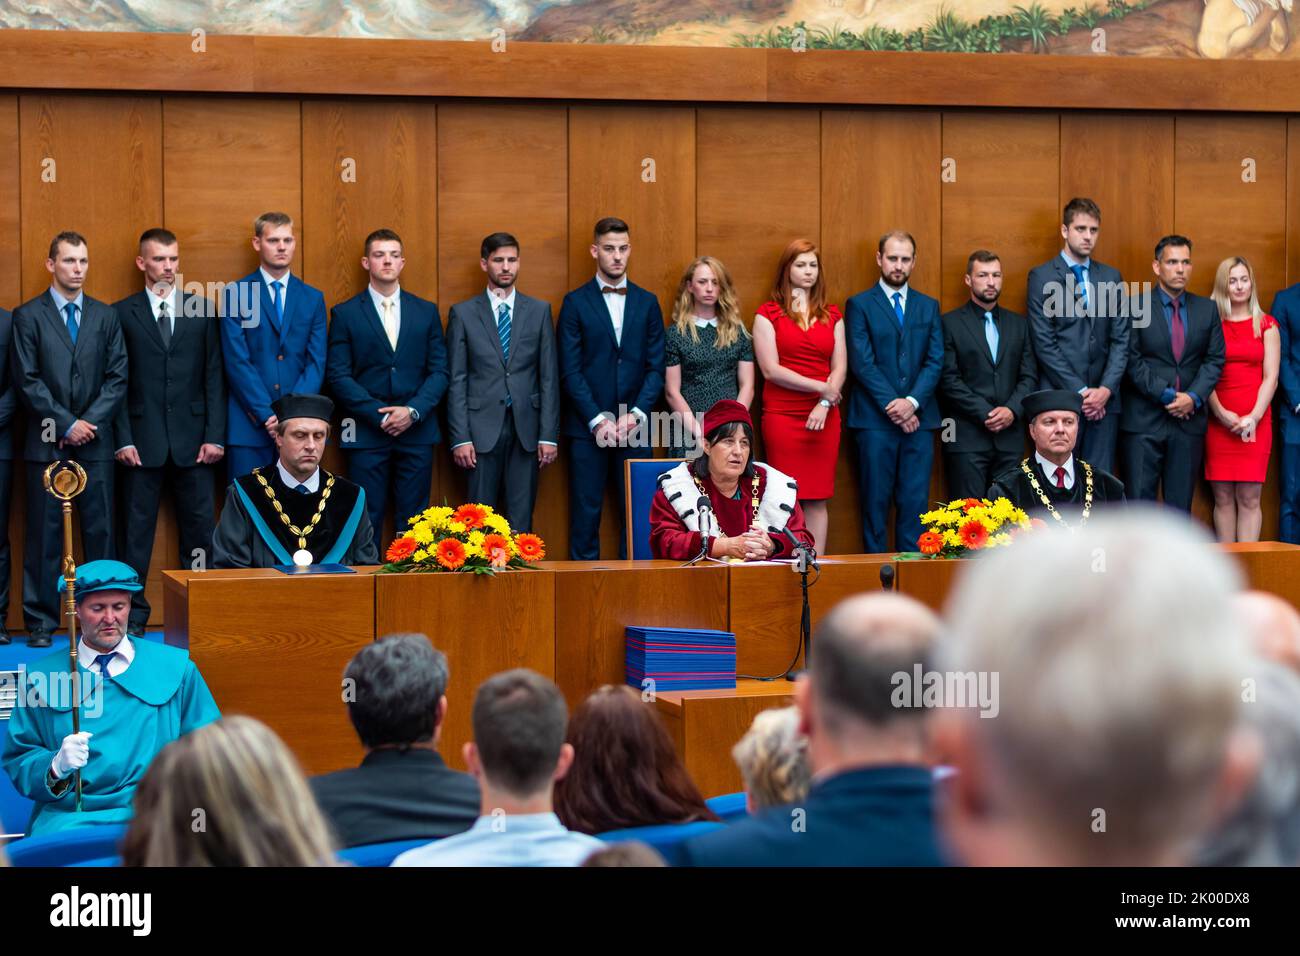 BRÜNN, TSCHECHISCHE REPUBLIK - 12,7.2019: Abschlussfeier an der Masaryk-Universität in Brünn. Das Diplom-Zertifikat wird auf dem Tisch vorbereitet. Studenten sind wa Stockfoto